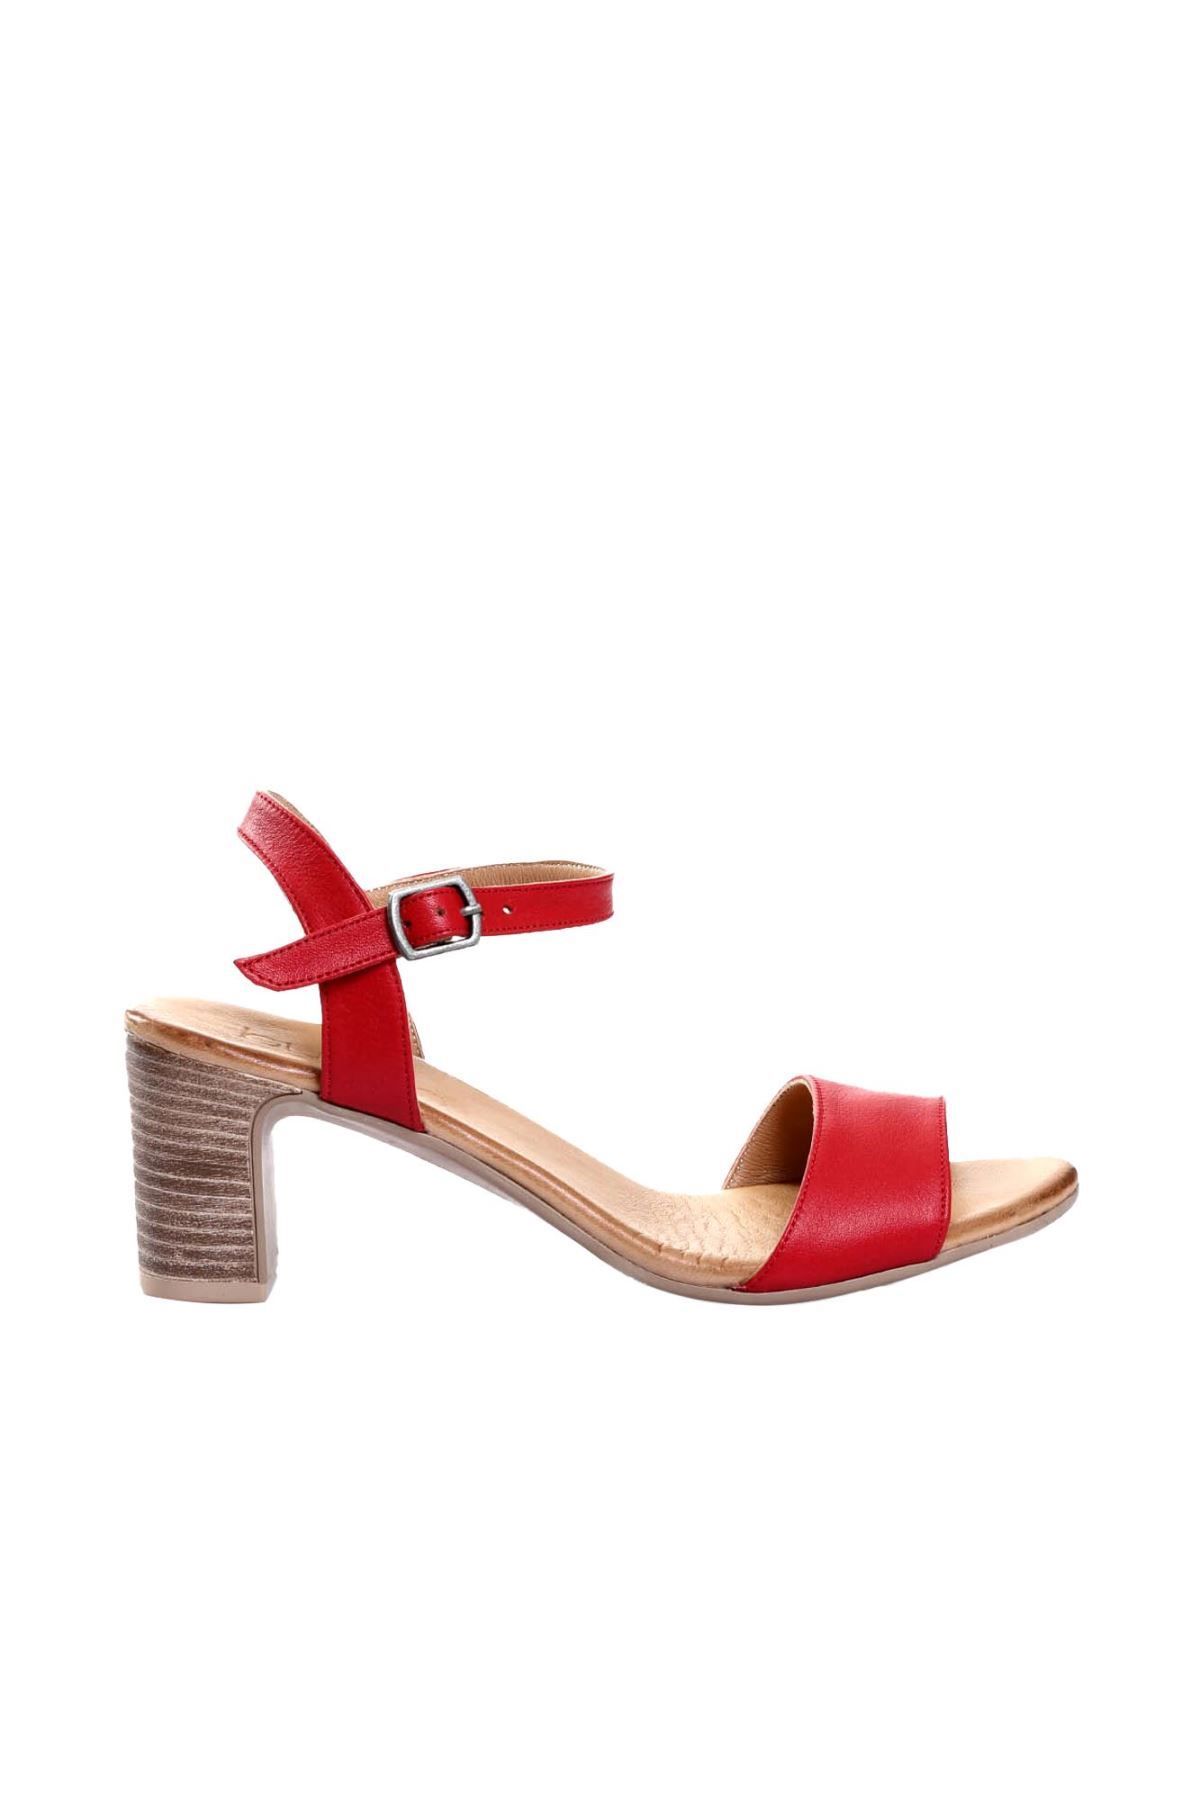 BUENO Shoes Kırmızı Deri Kadın Topuklu Sandalet